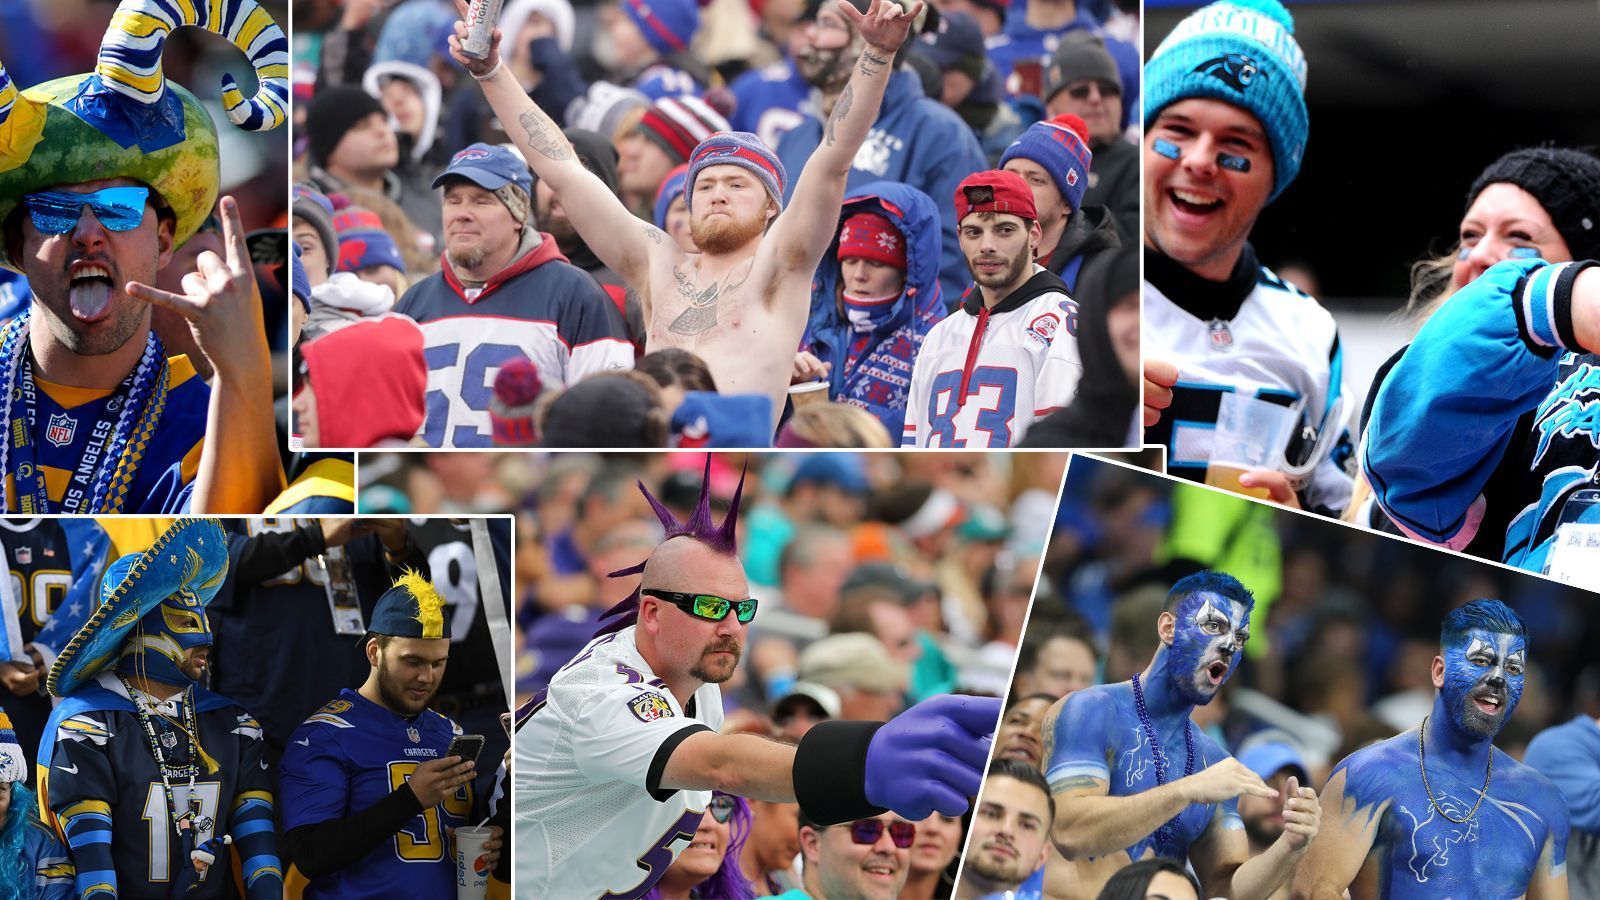 
                <strong>NFL: Diese Fan-Gruppen trinken am meisten Alkohol</strong><br>
                Ob aus Frust, vor lauter Freude oder zur Unterhaltung: Natürlich wird in den NFL-Stadien gerne mal der ein oder andere Drink verzehrt. In einer Umfrage von "Sports Handle" haben über 2.000 NFL-Fans verraten, wie viel sie während der Spiele trinken. Aber welche Fangruppe trinkt am meisten? 
              